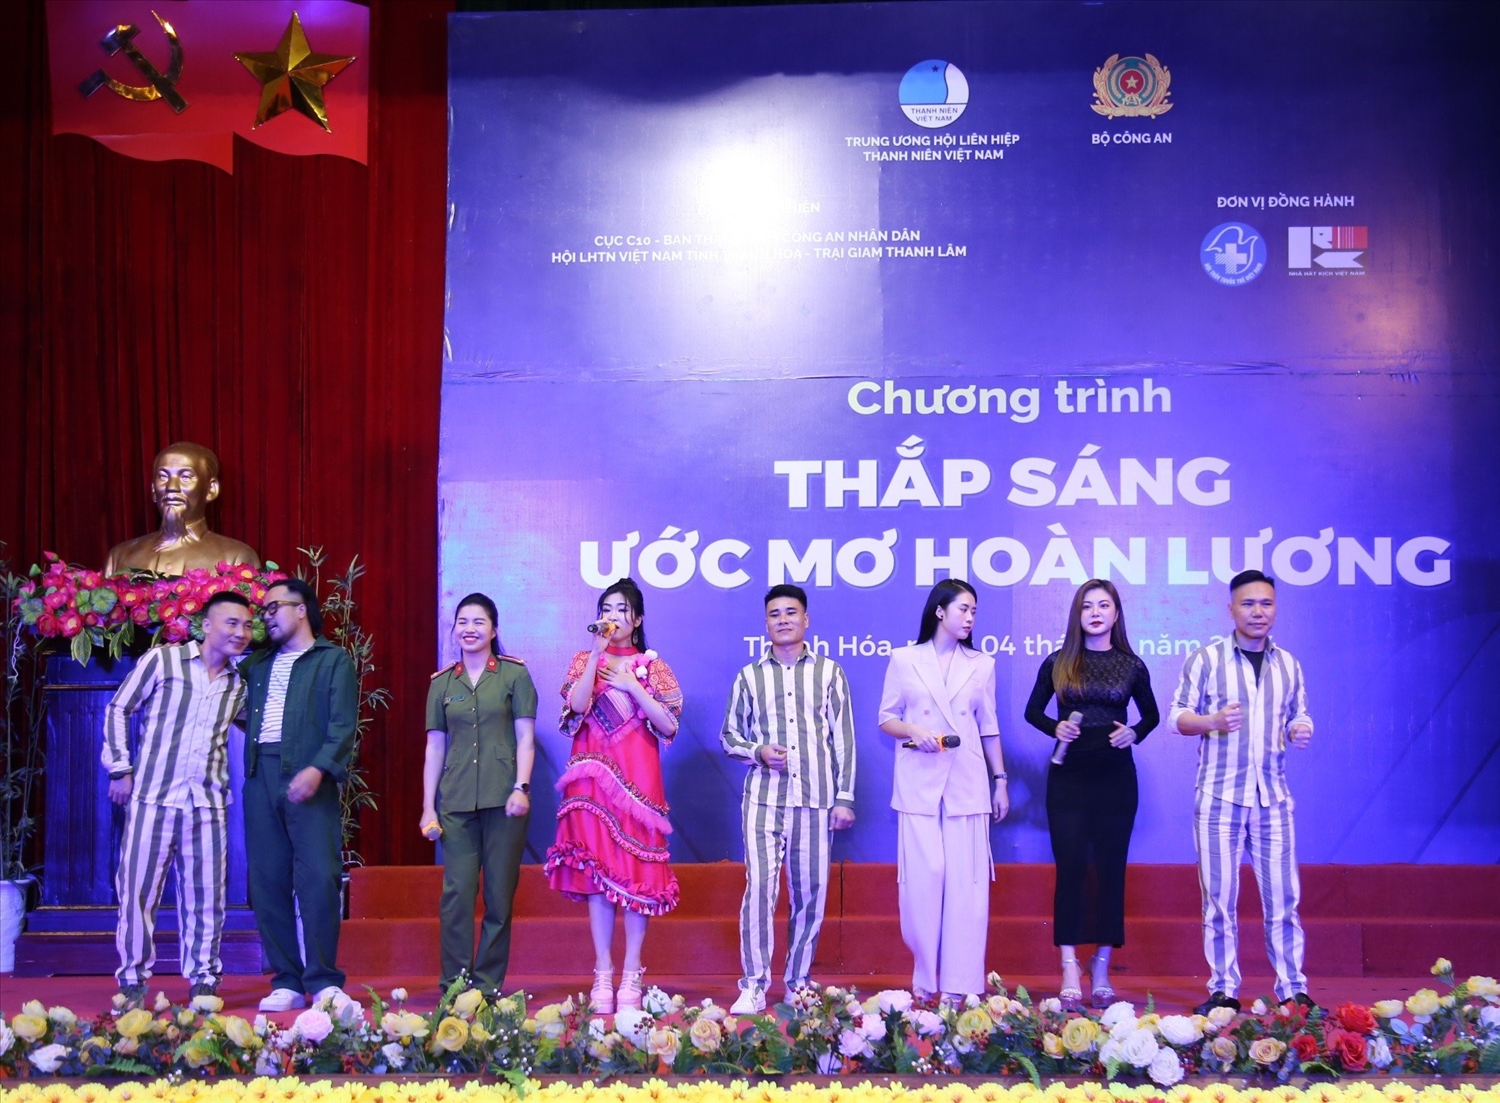 Phần giao lưu văn nghệ giữ các nghệ sĩ trẻ của CLB văn nghệ sĩ trẻ Việt Nam như: Hà Myo, Raper Rica, Quỳnh Anh… với cán bộ chiến sỹ, phạm nhân trại giam Thanh Lâm